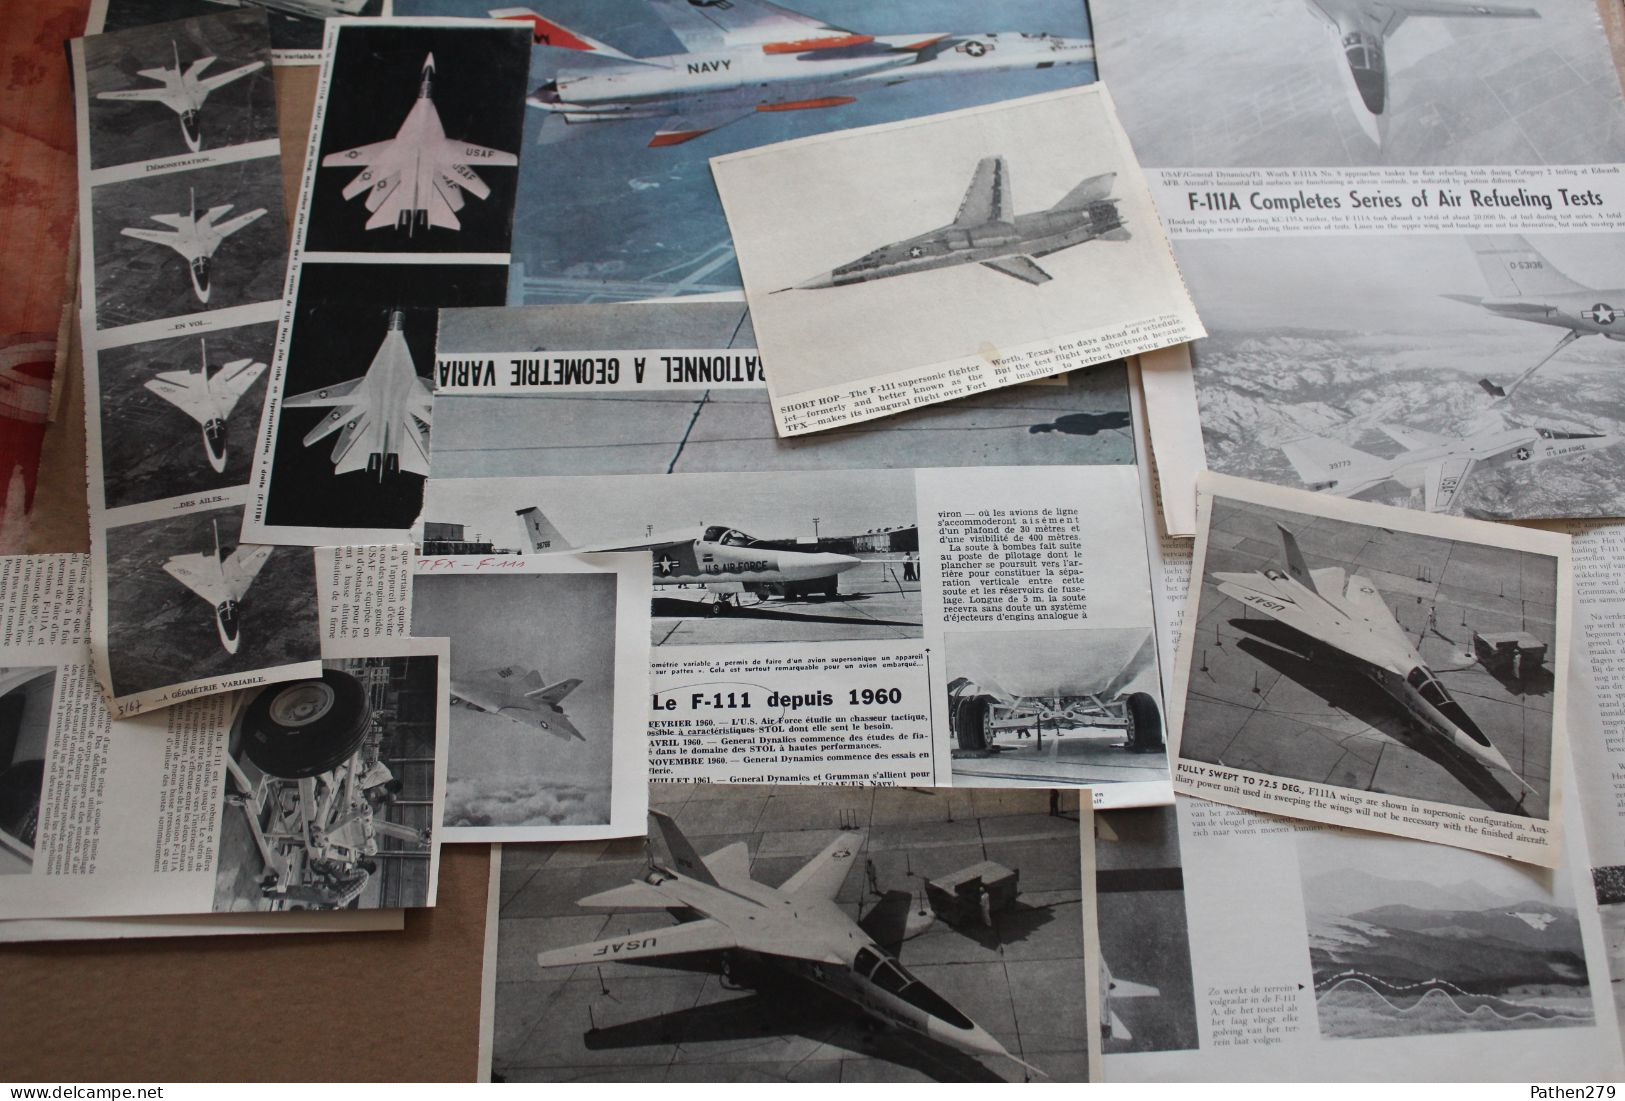 Lot de 340g d'anciennes coupures de presse de l'aéronef américain Général Electric Grumman F-111